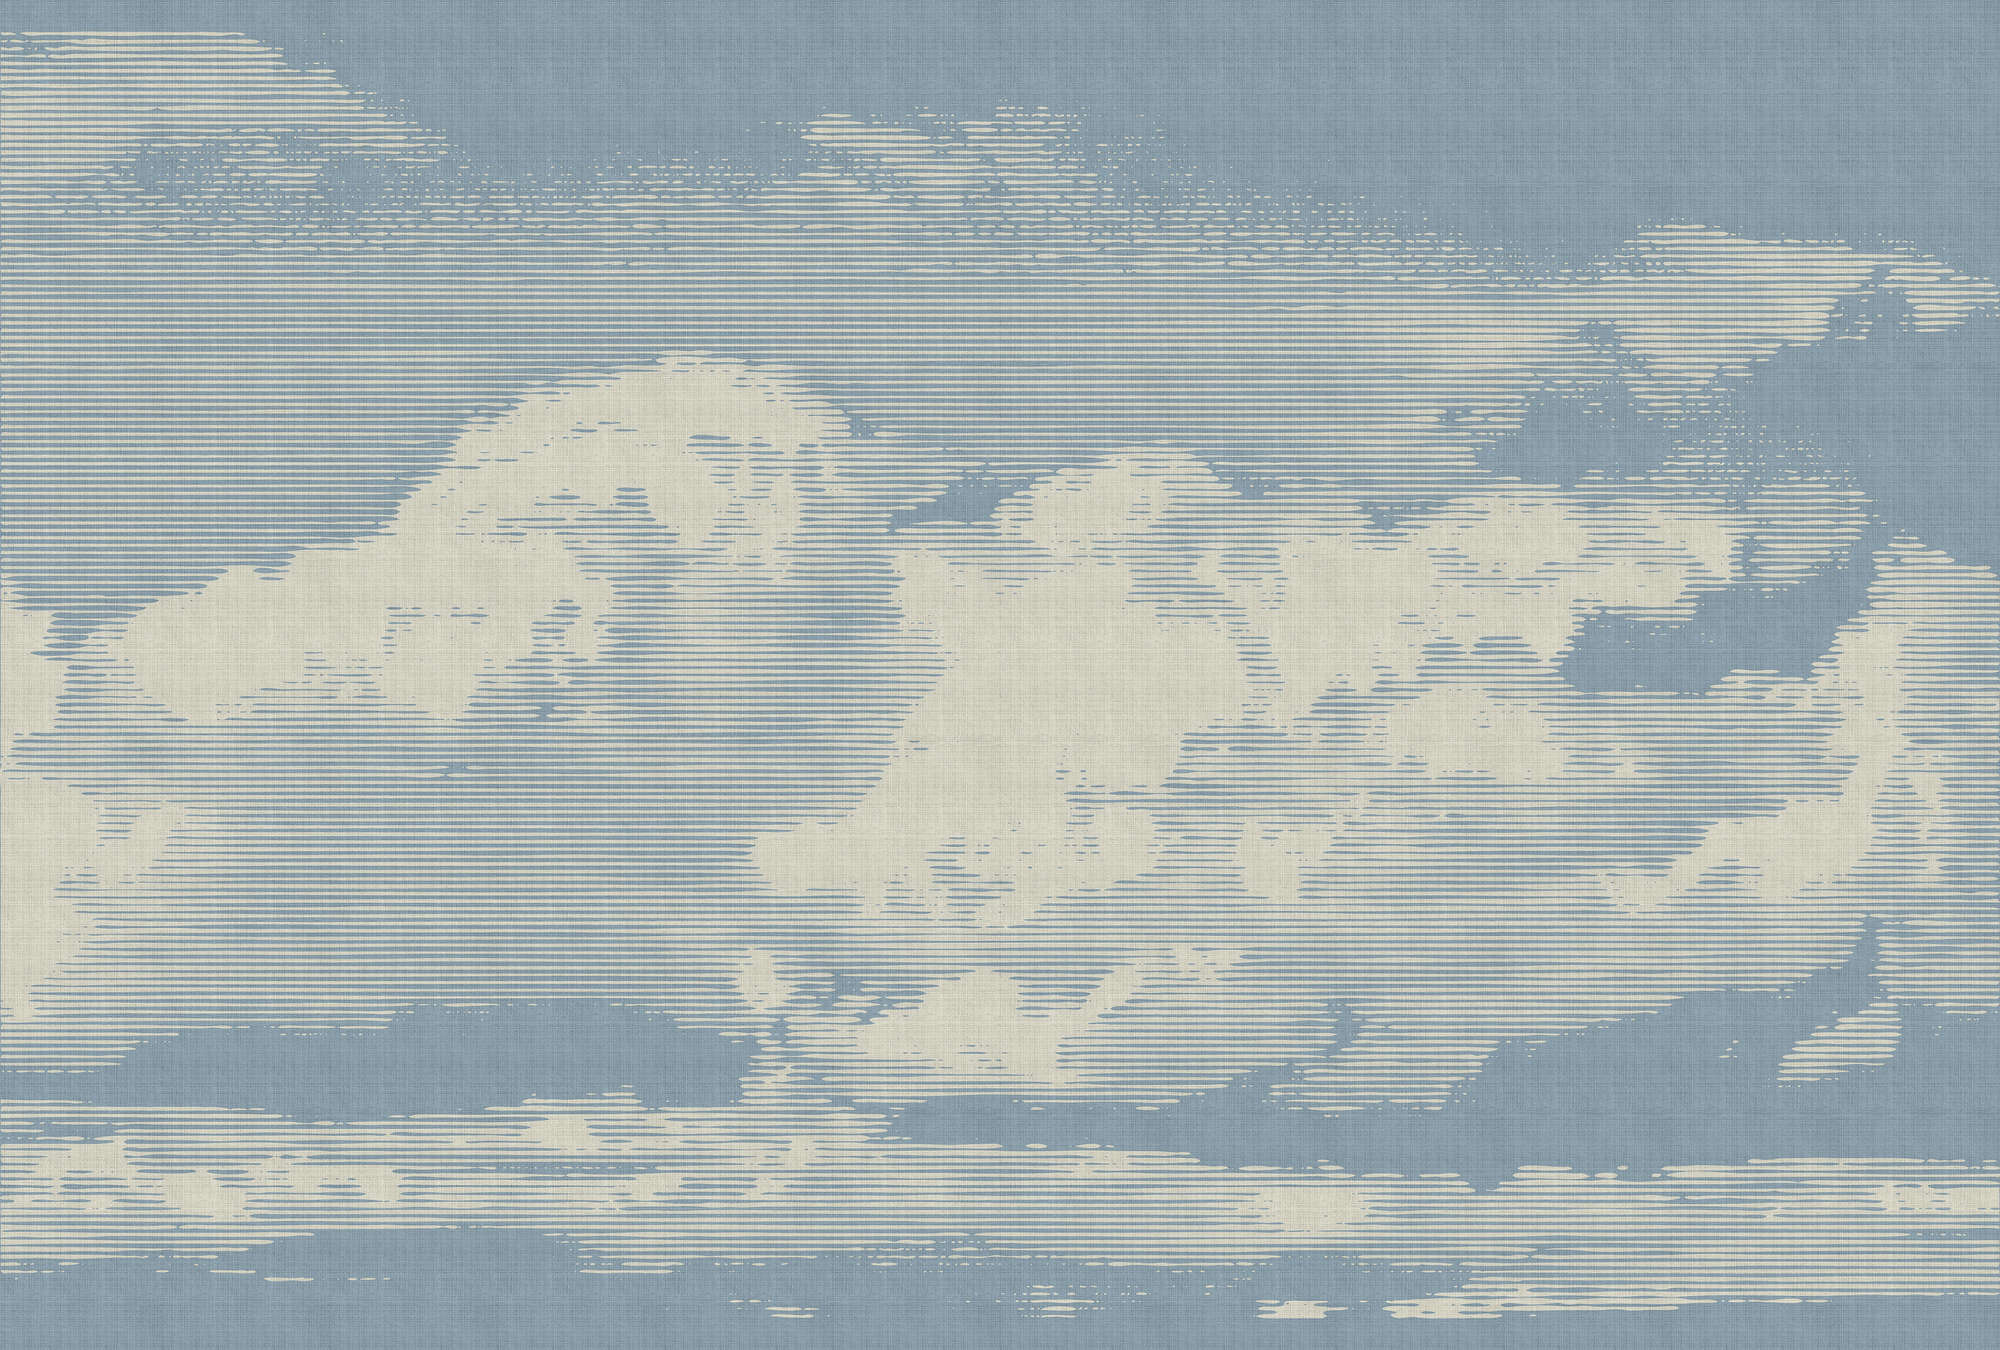             Clouds 1 - Papier peint céleste avec motif de nuages en lin naturel structuré - beige, bleu | structure Intissé
        